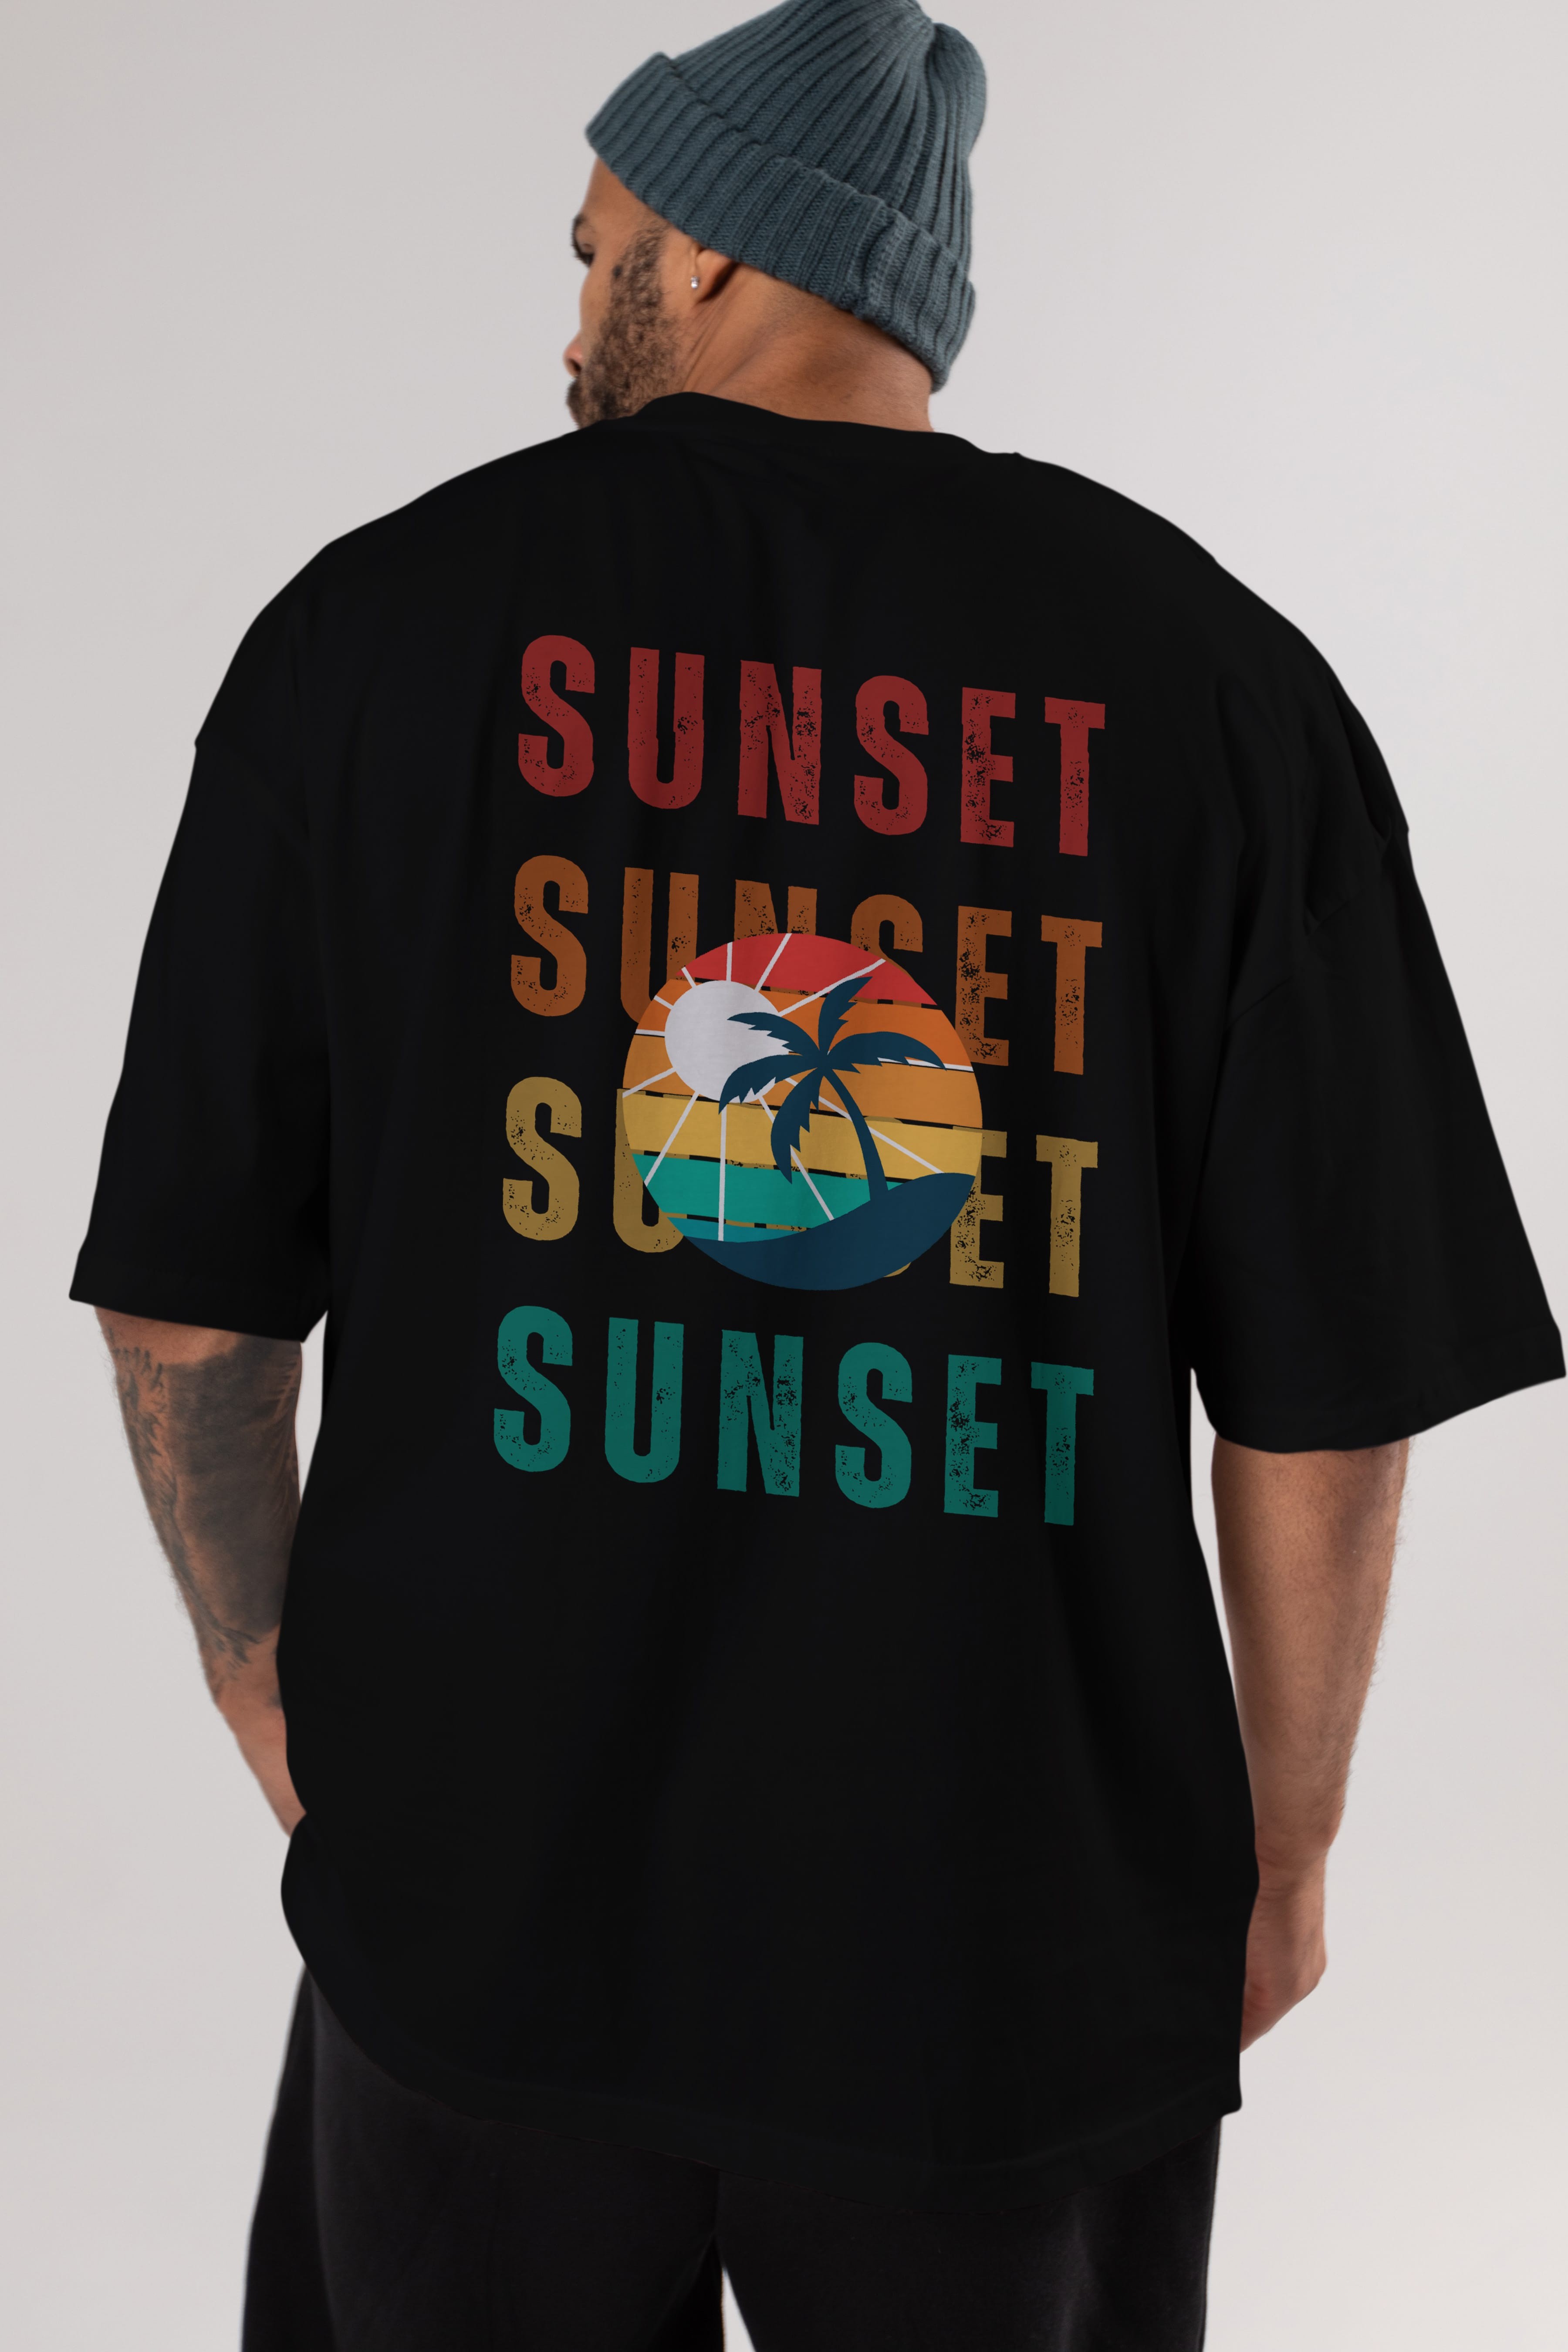 Sunset Yazılı Arka Baskılı Oversize t-shirt Erkek Kadın Unisex